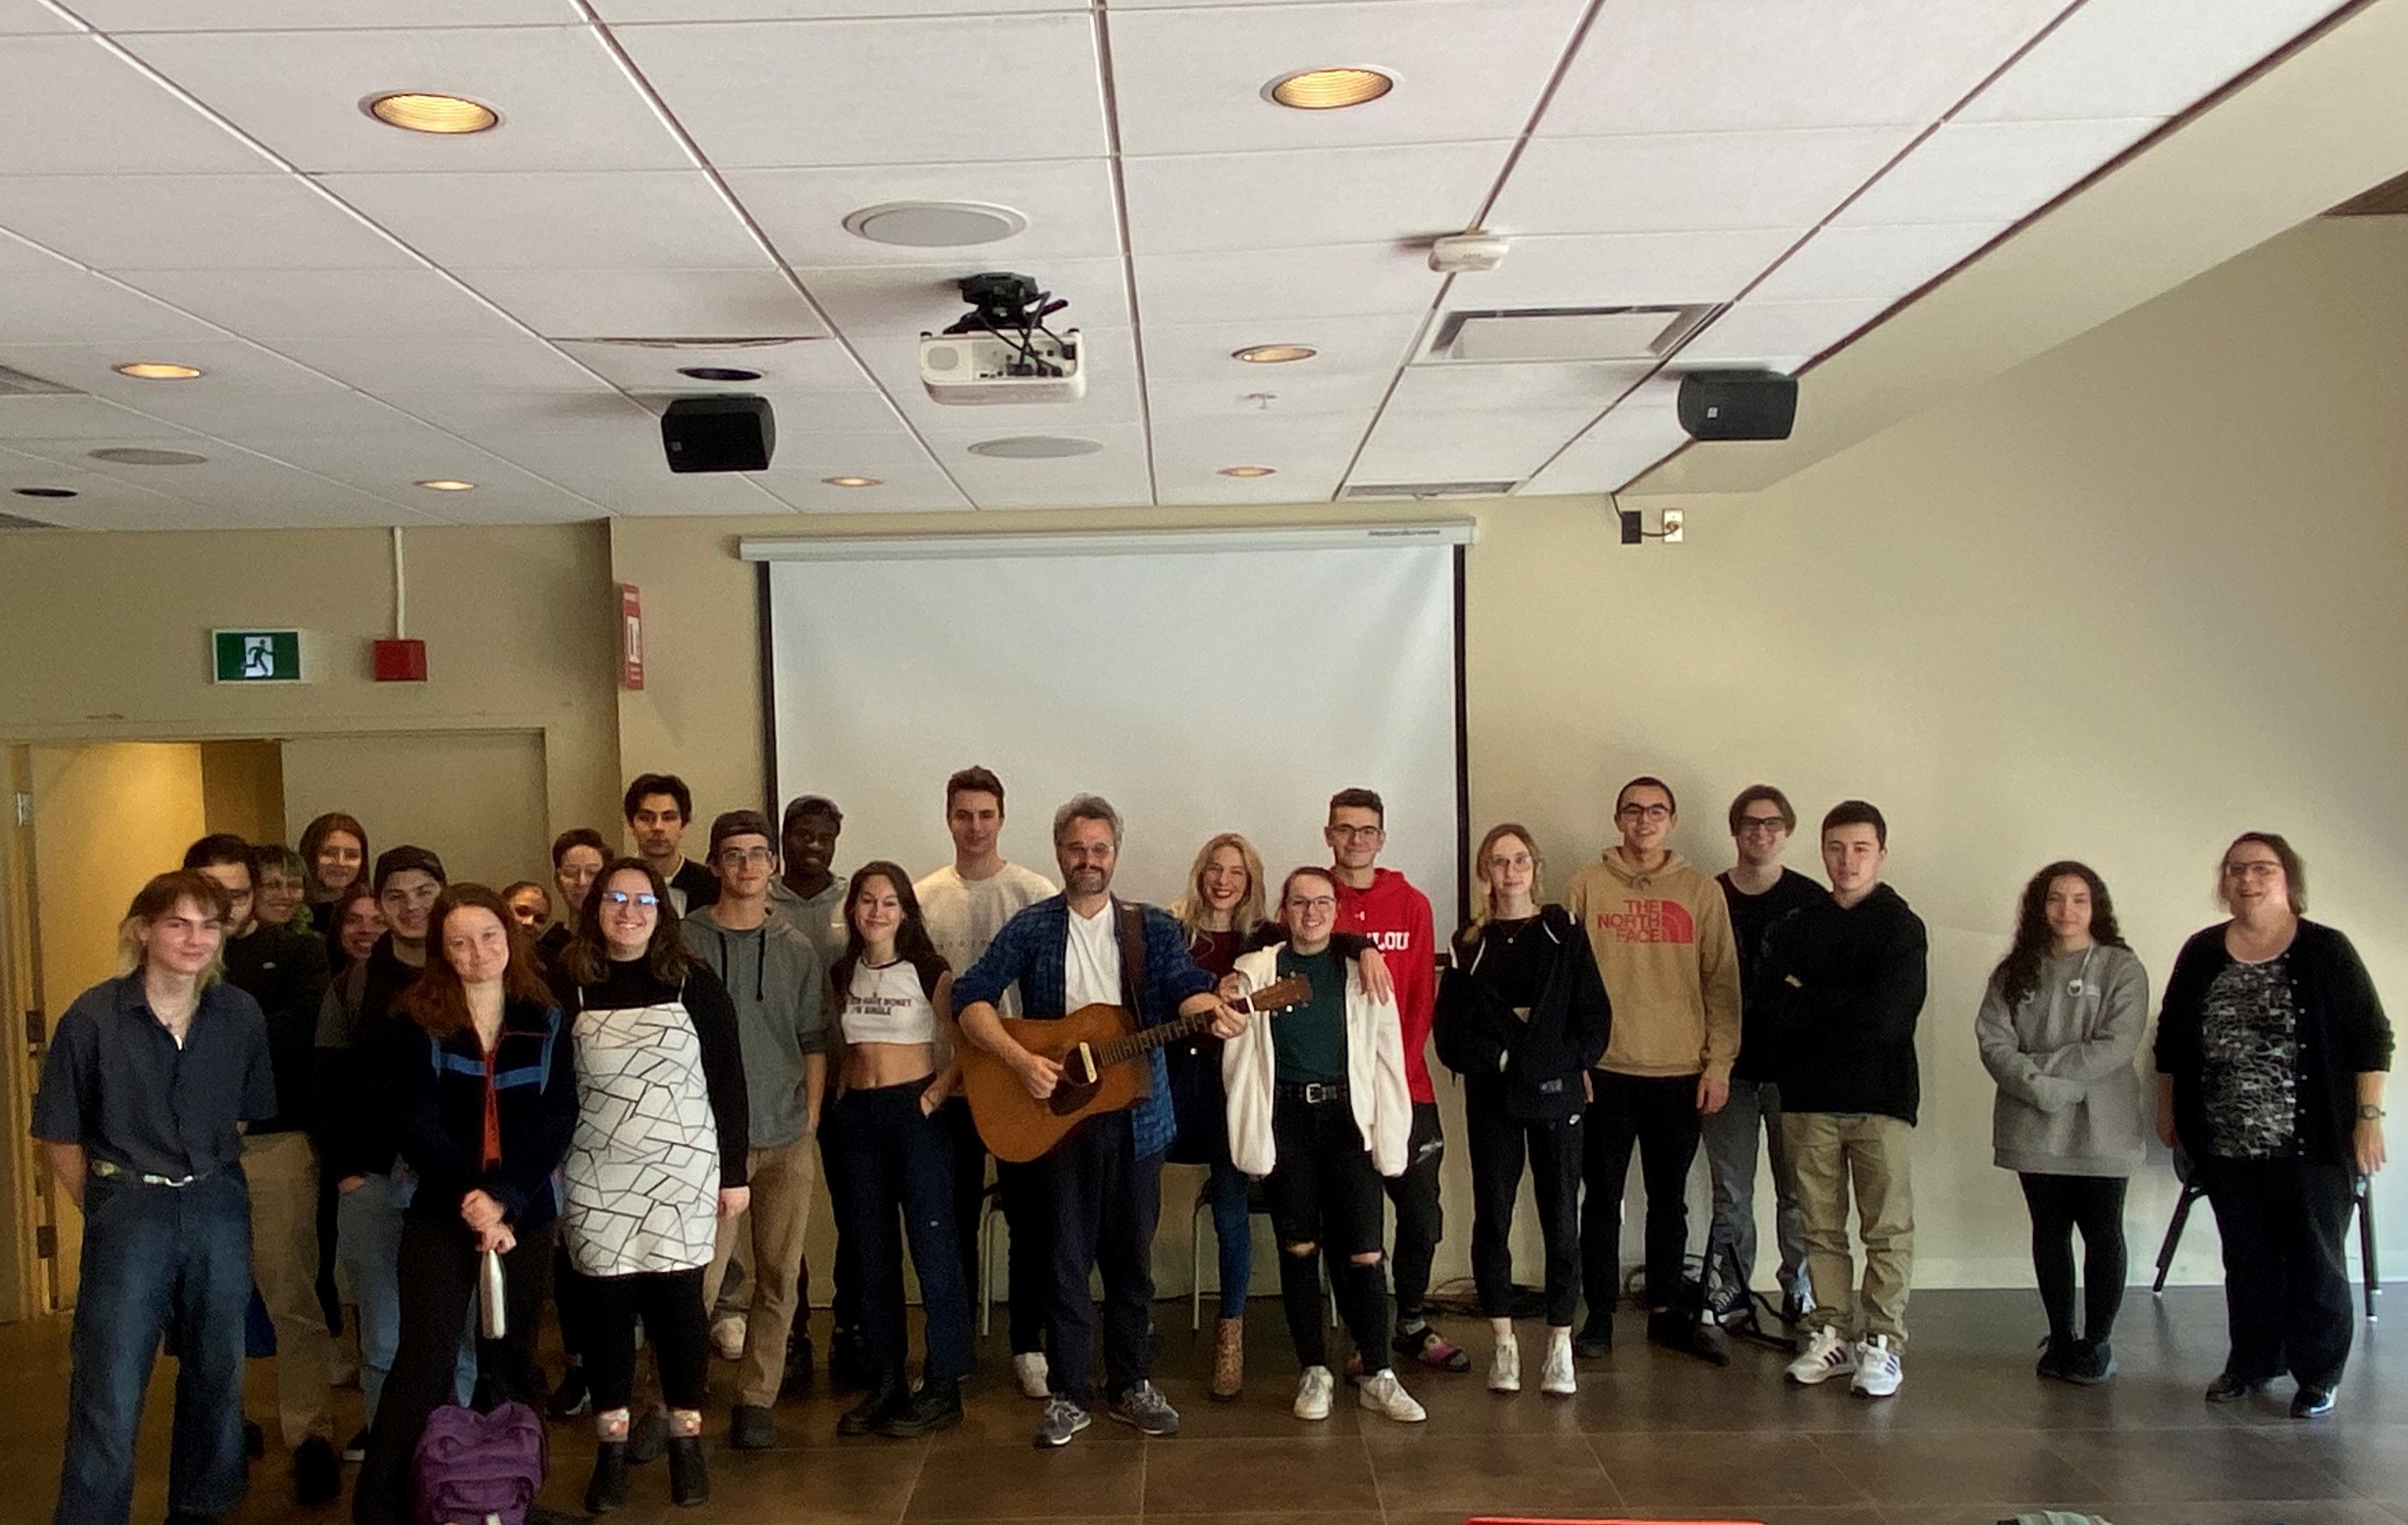 Thomas Hellman avec sa guitare, en compagnie des étudiants et étudiantes de Sciences humaines